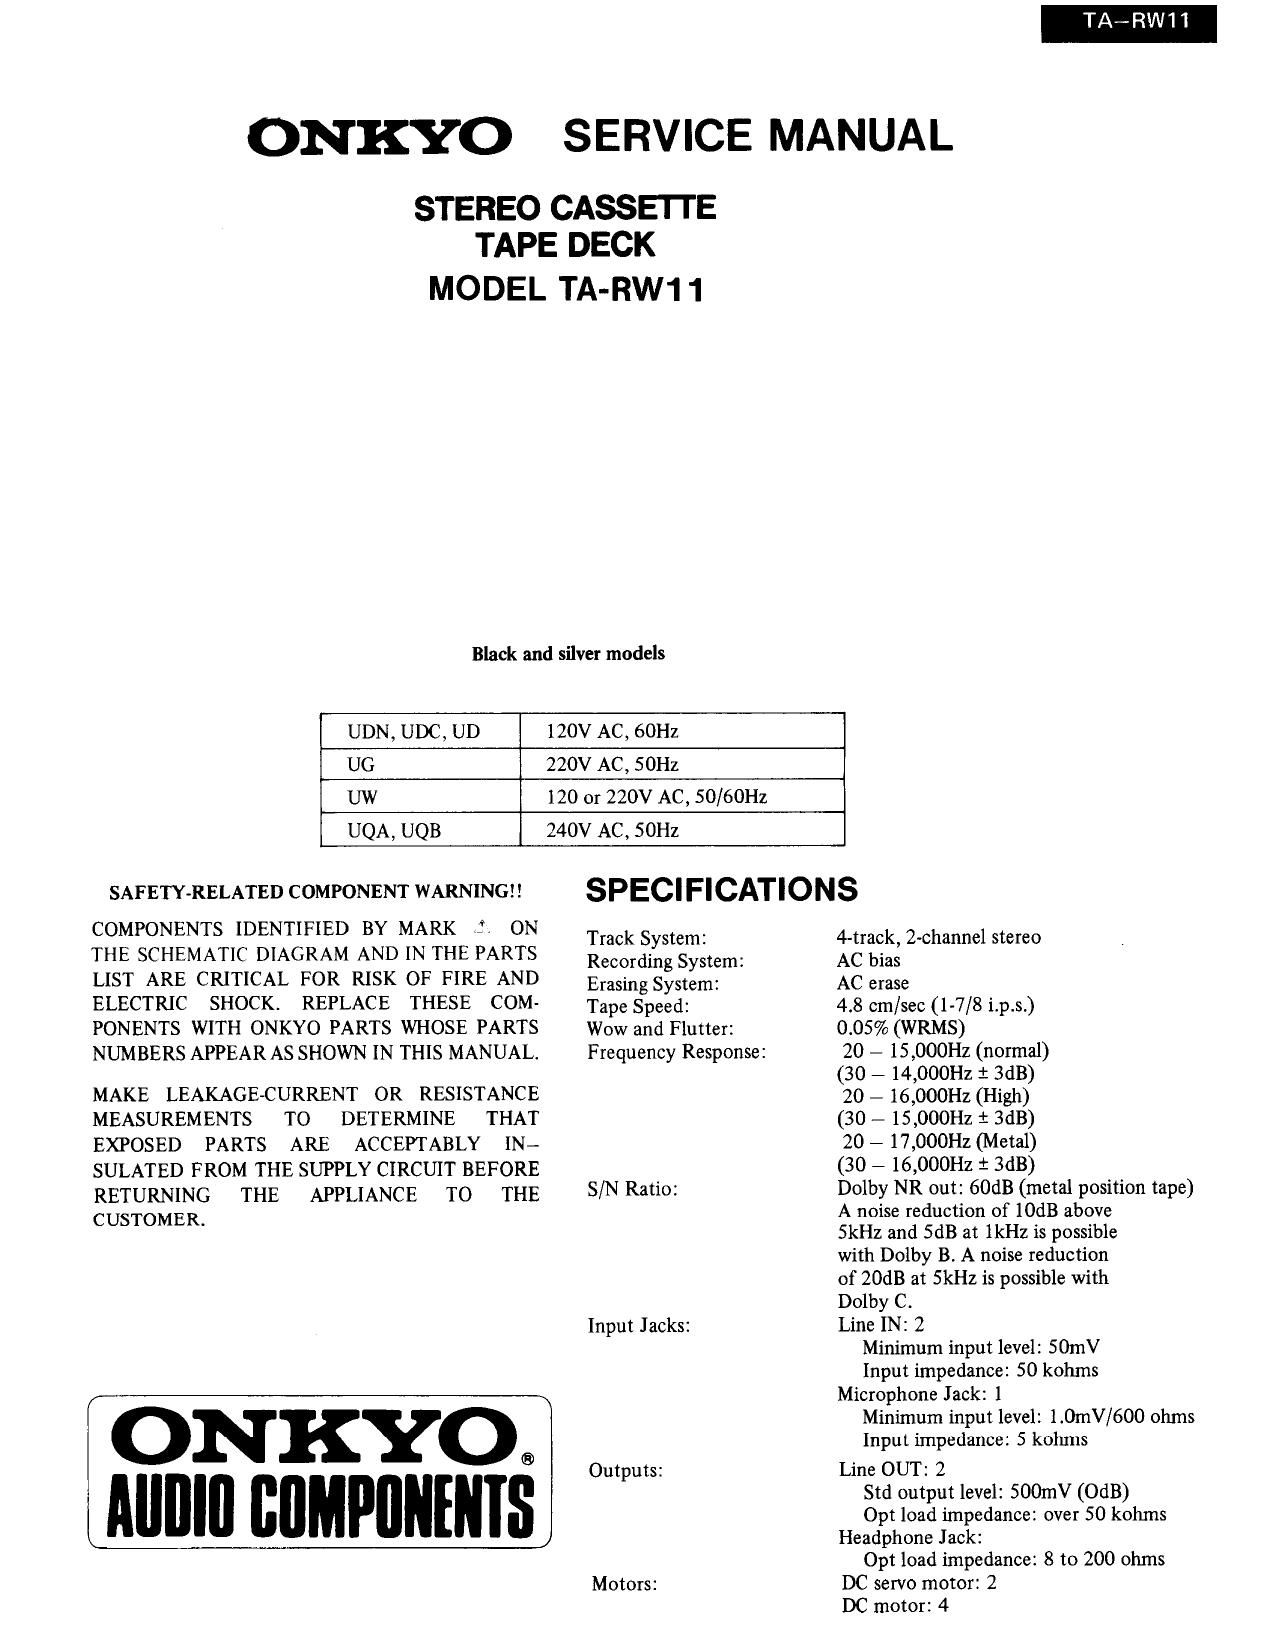 Onkyo TARW 11 Service Manual